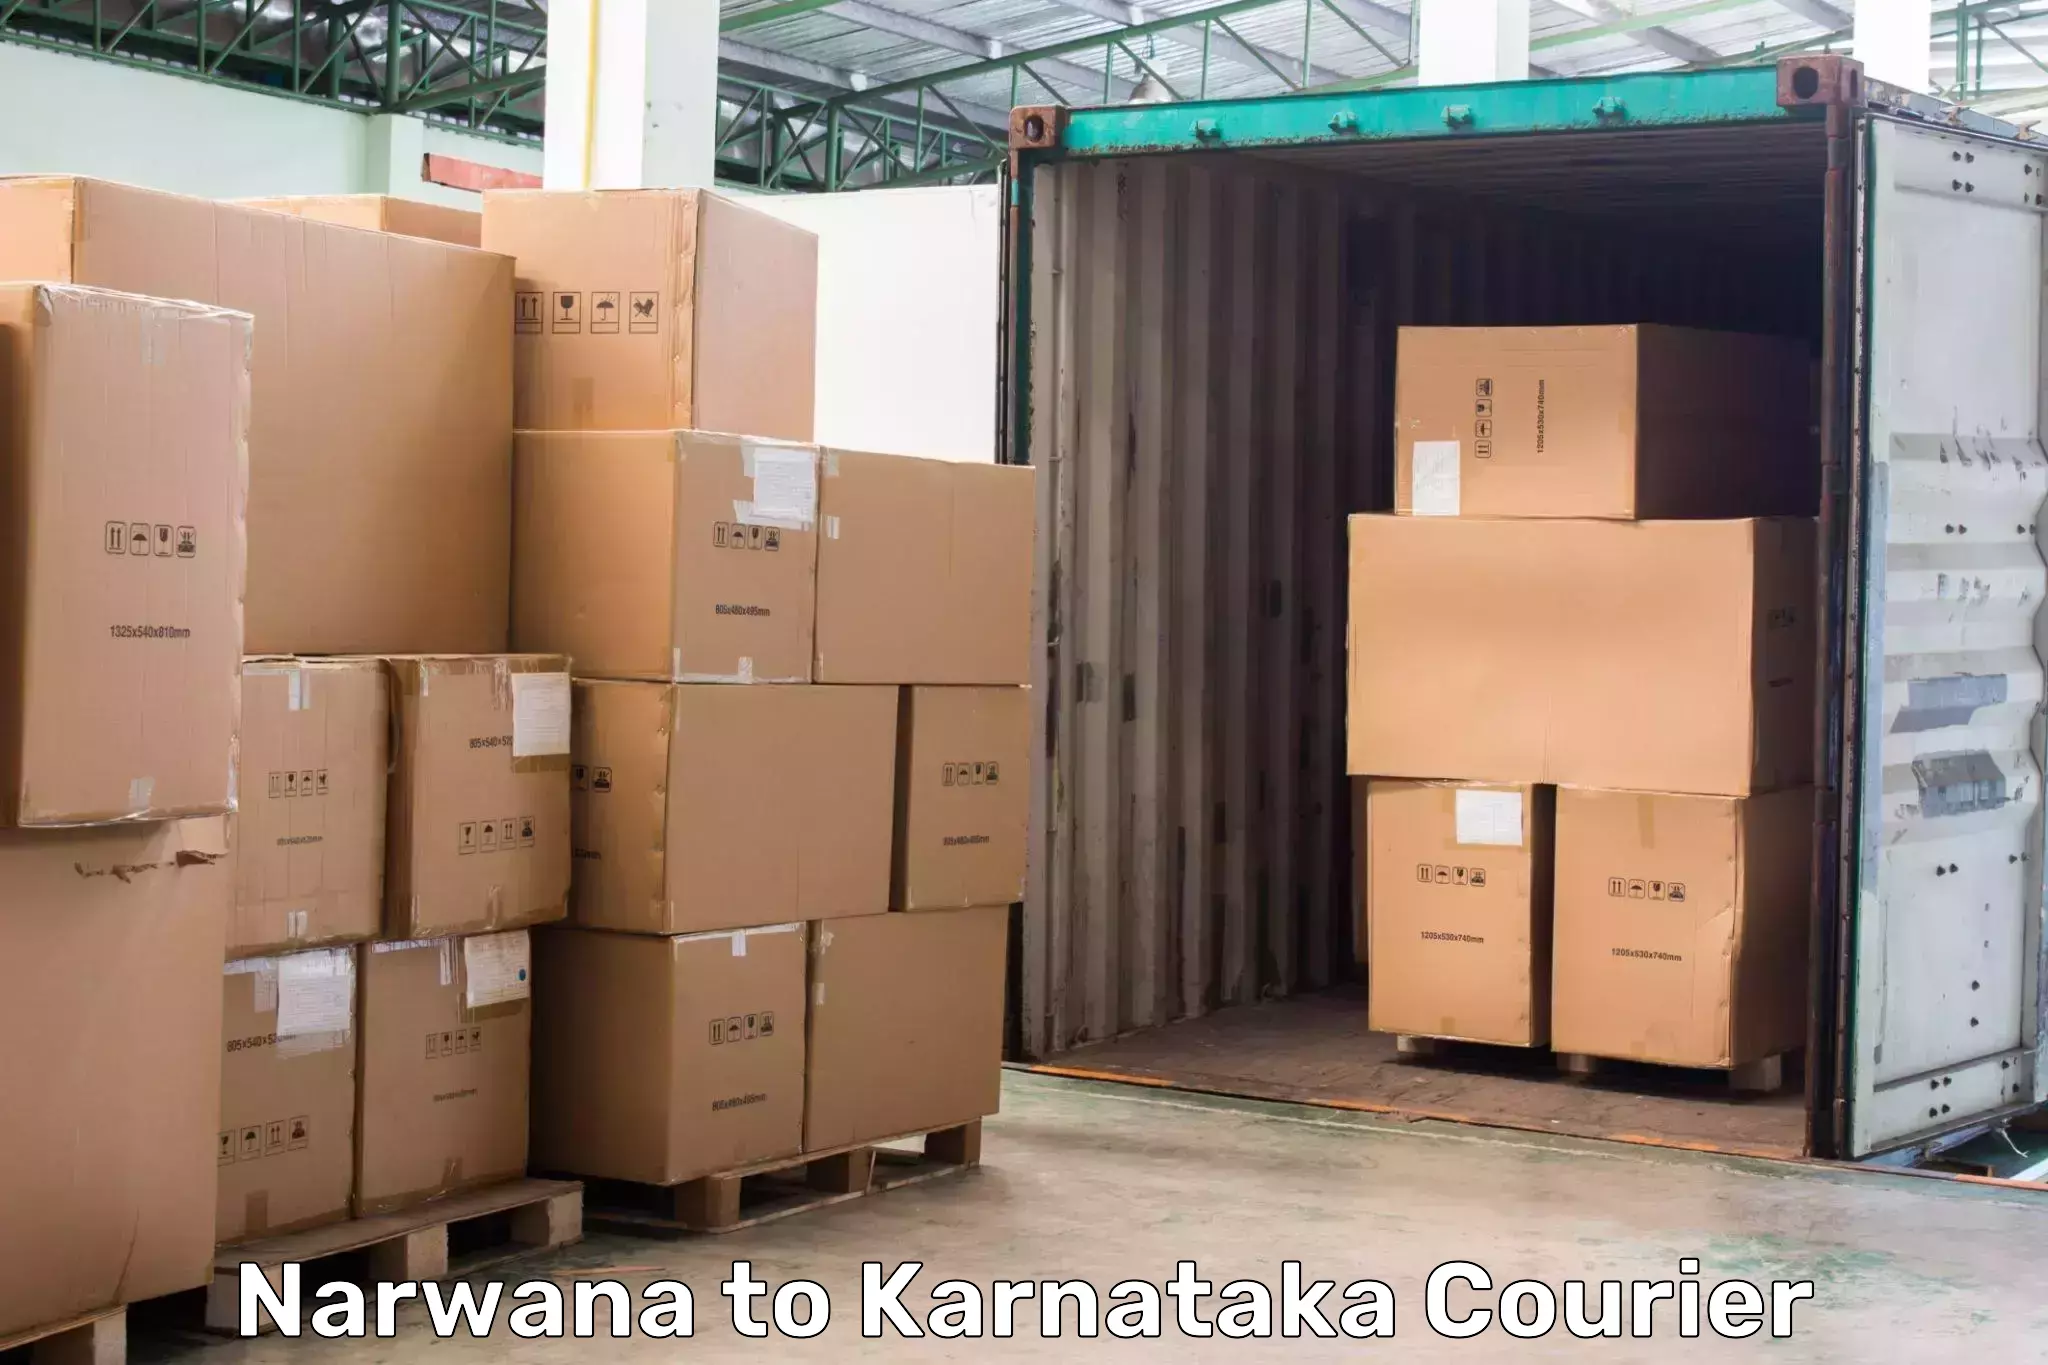 High-capacity shipping options Narwana to Bangarapet